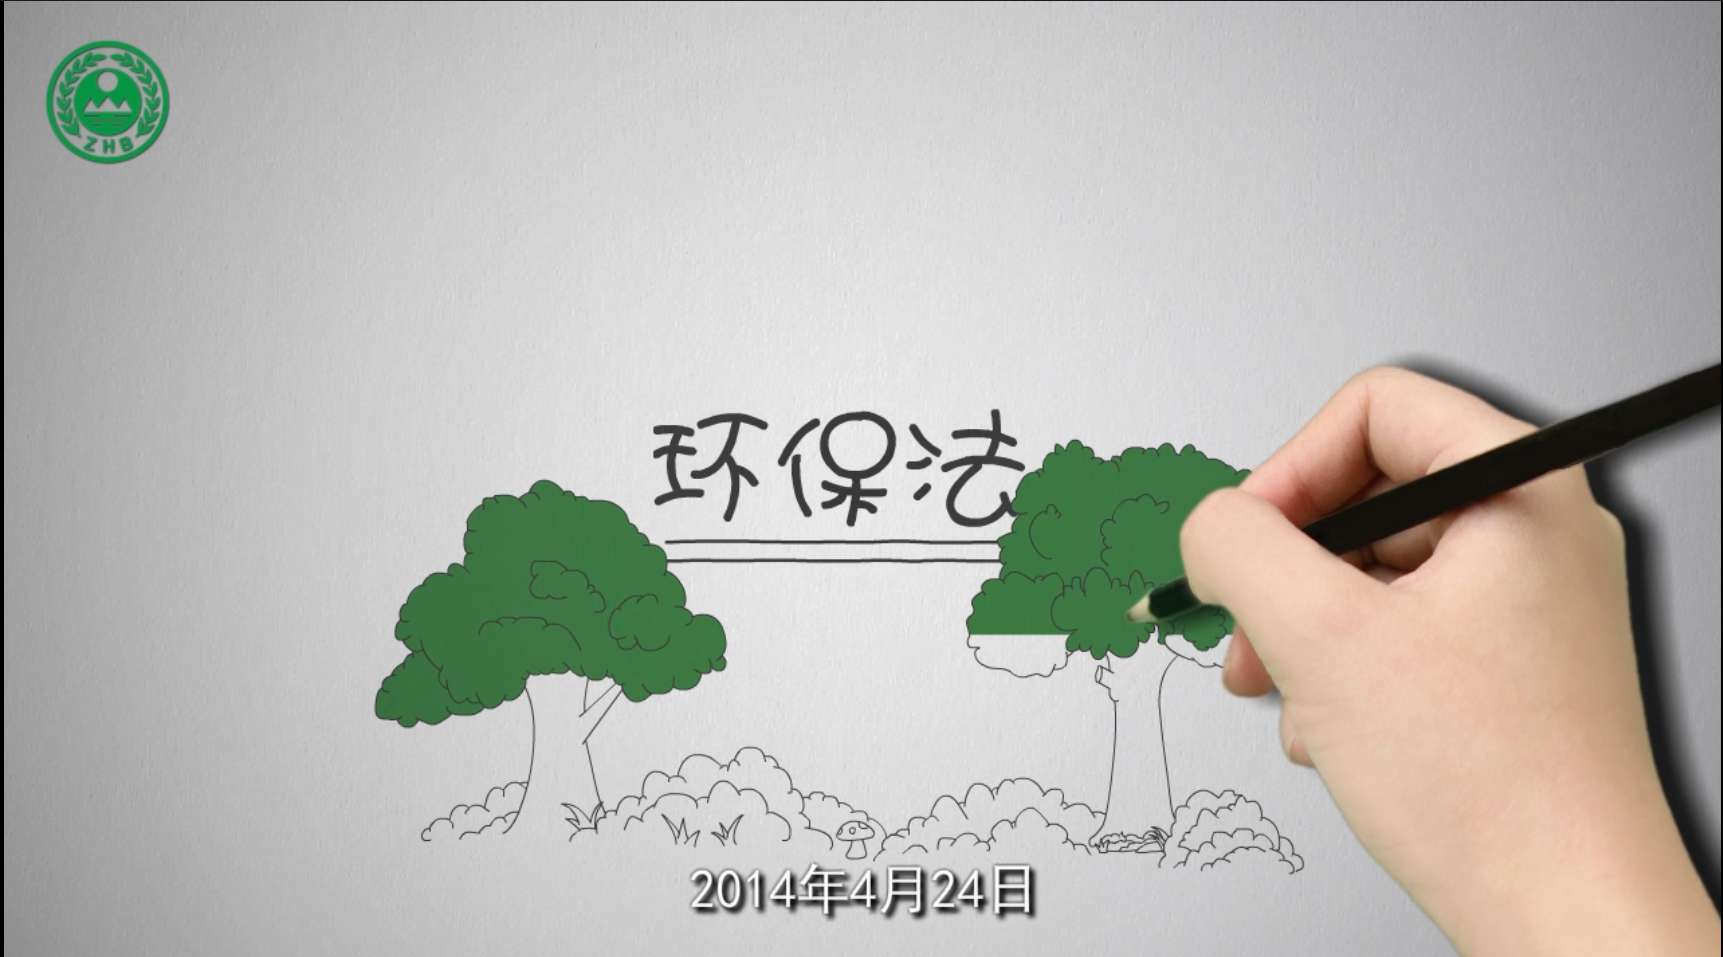 新环保法 二维动画演示 融光影业&浙江省环保厅